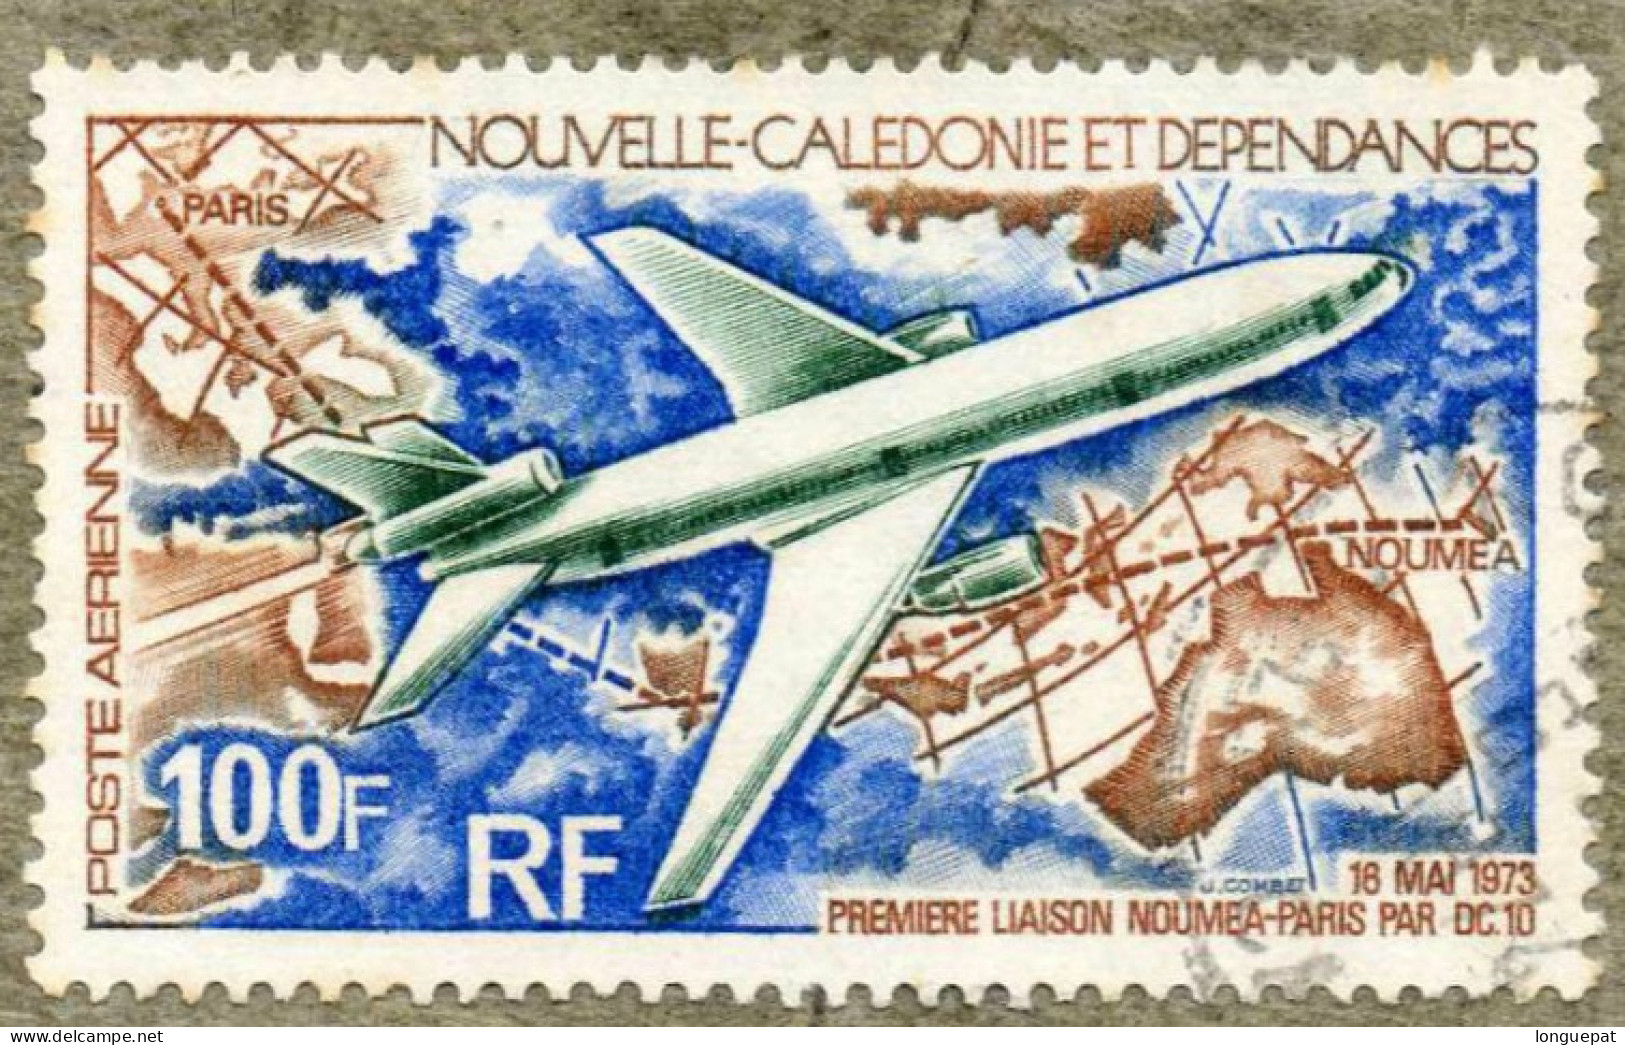 NOUVELLE-CALEDONIE : Aviation : 1ère Liaison Nouméa-Paris En DC 10 - Transport - Avions - - Used Stamps